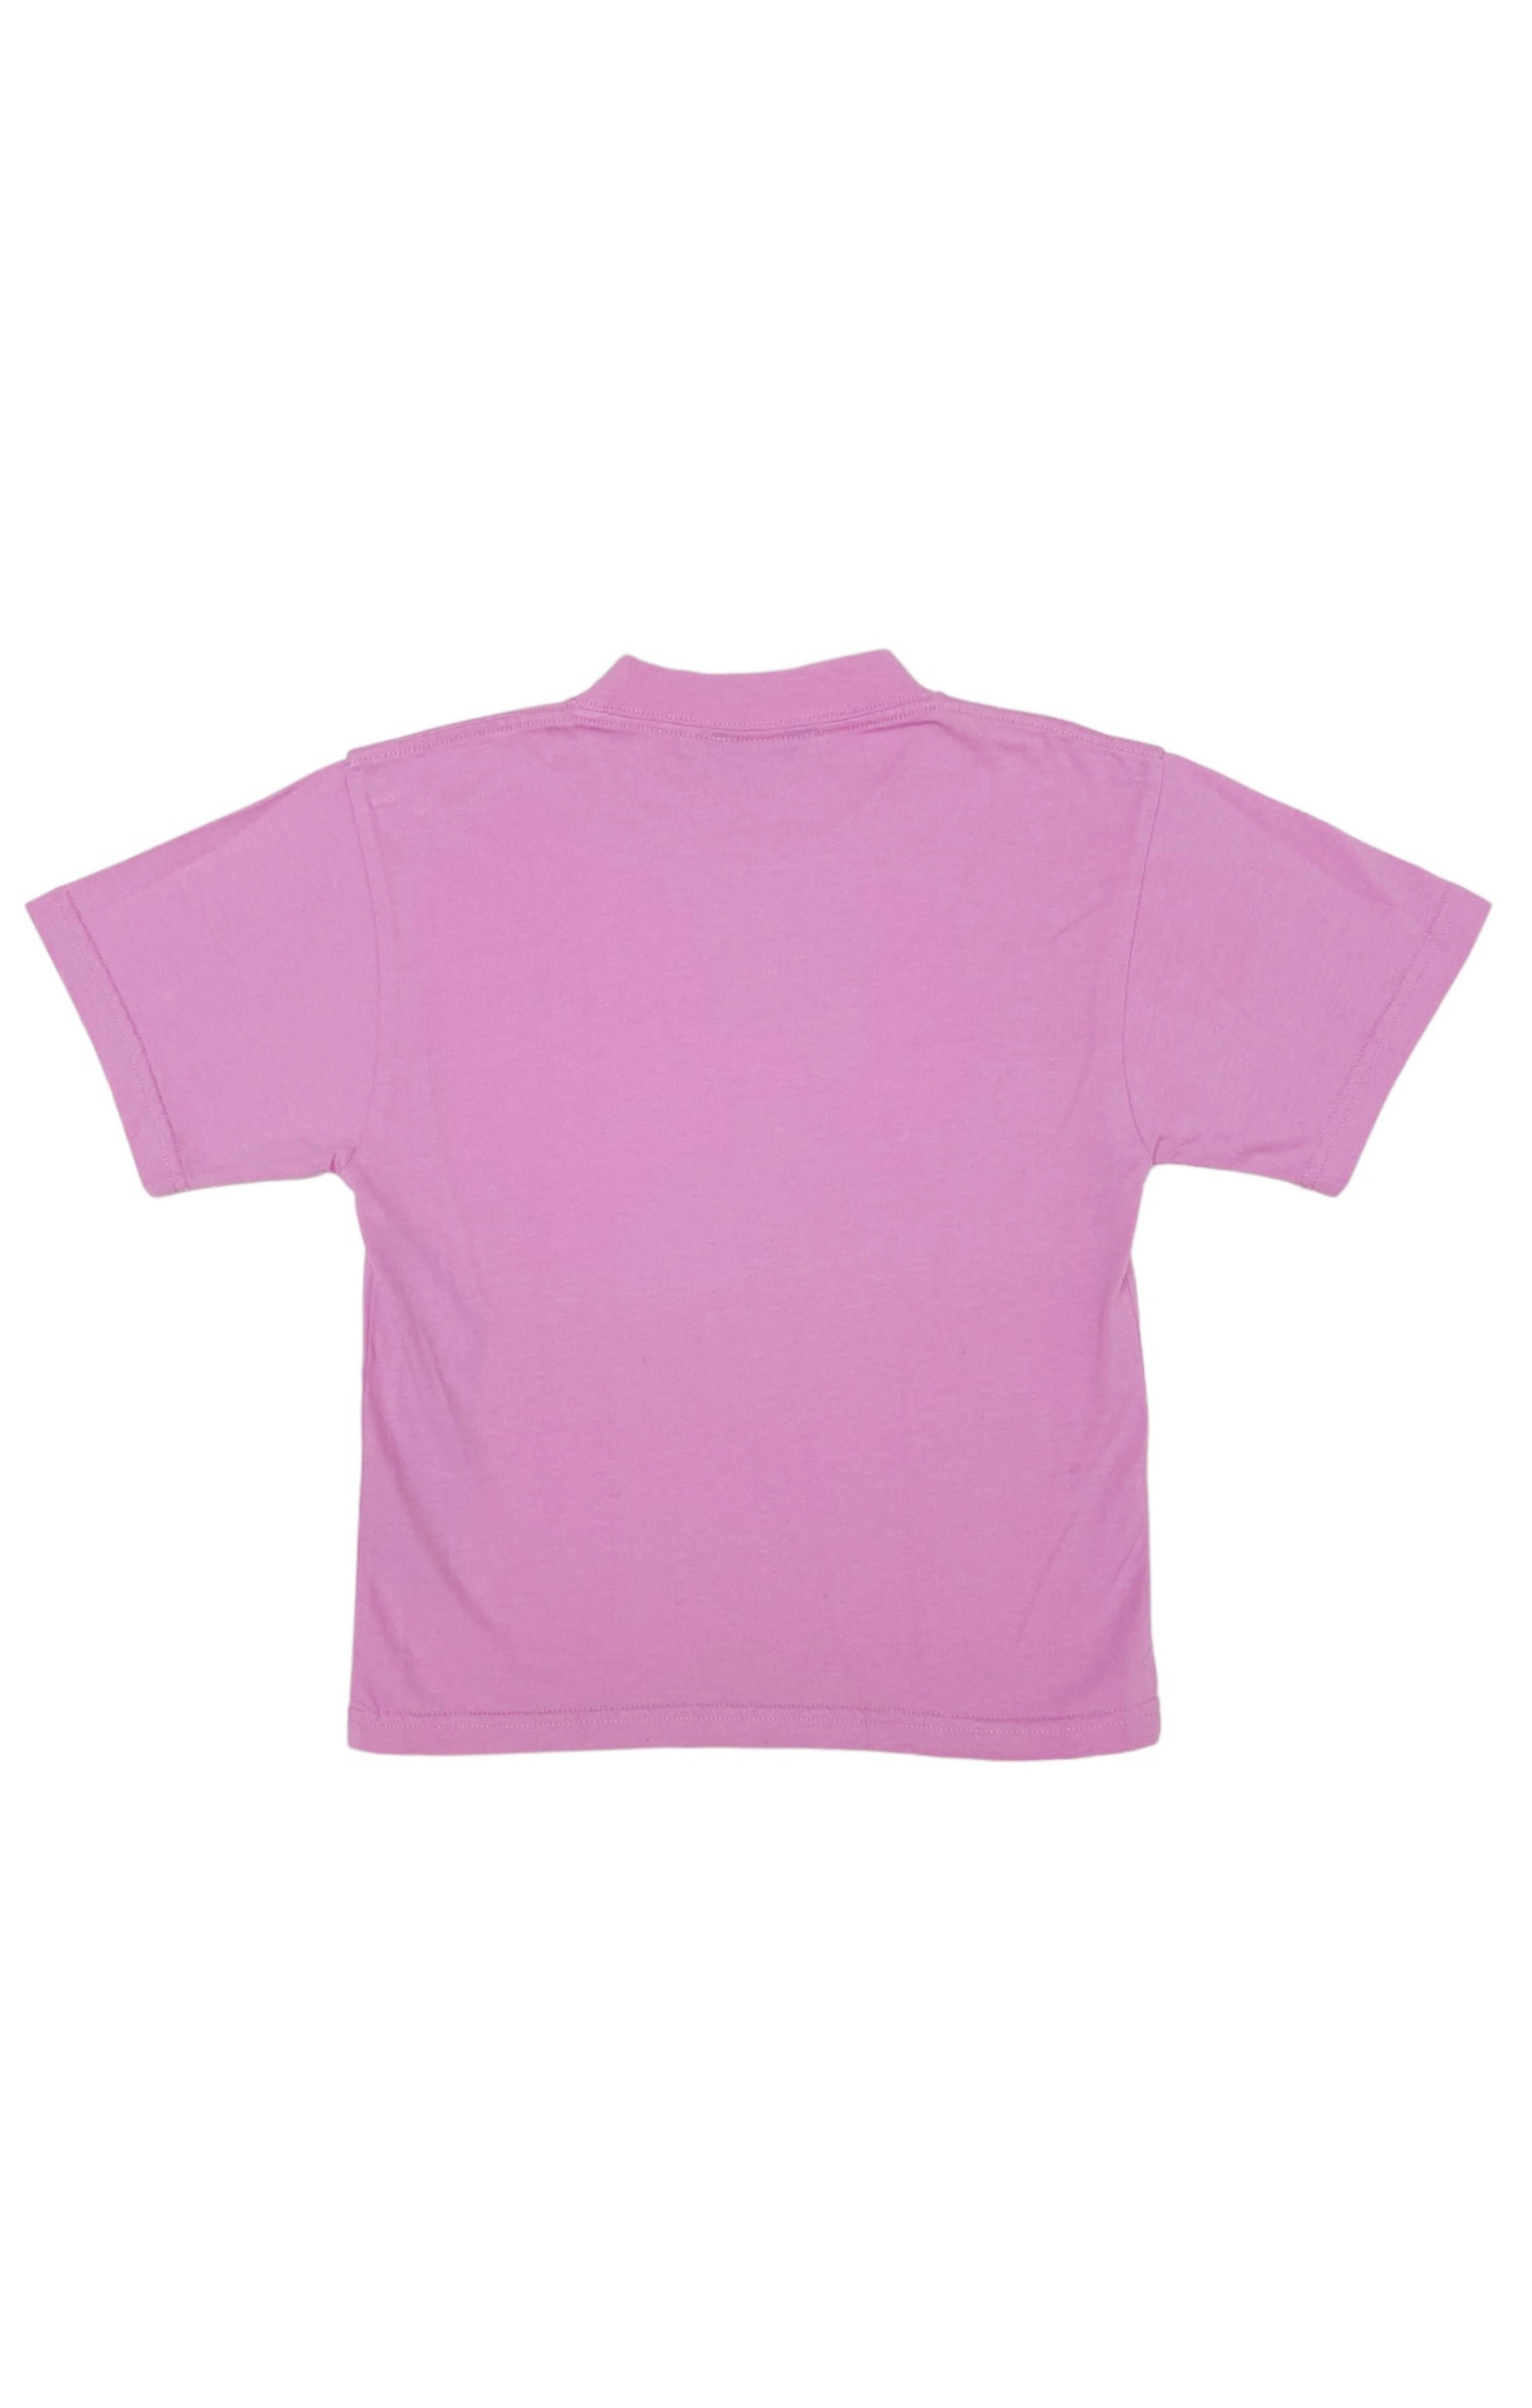 BALENCIAGA KIDS T-shirt Size: 6 Years